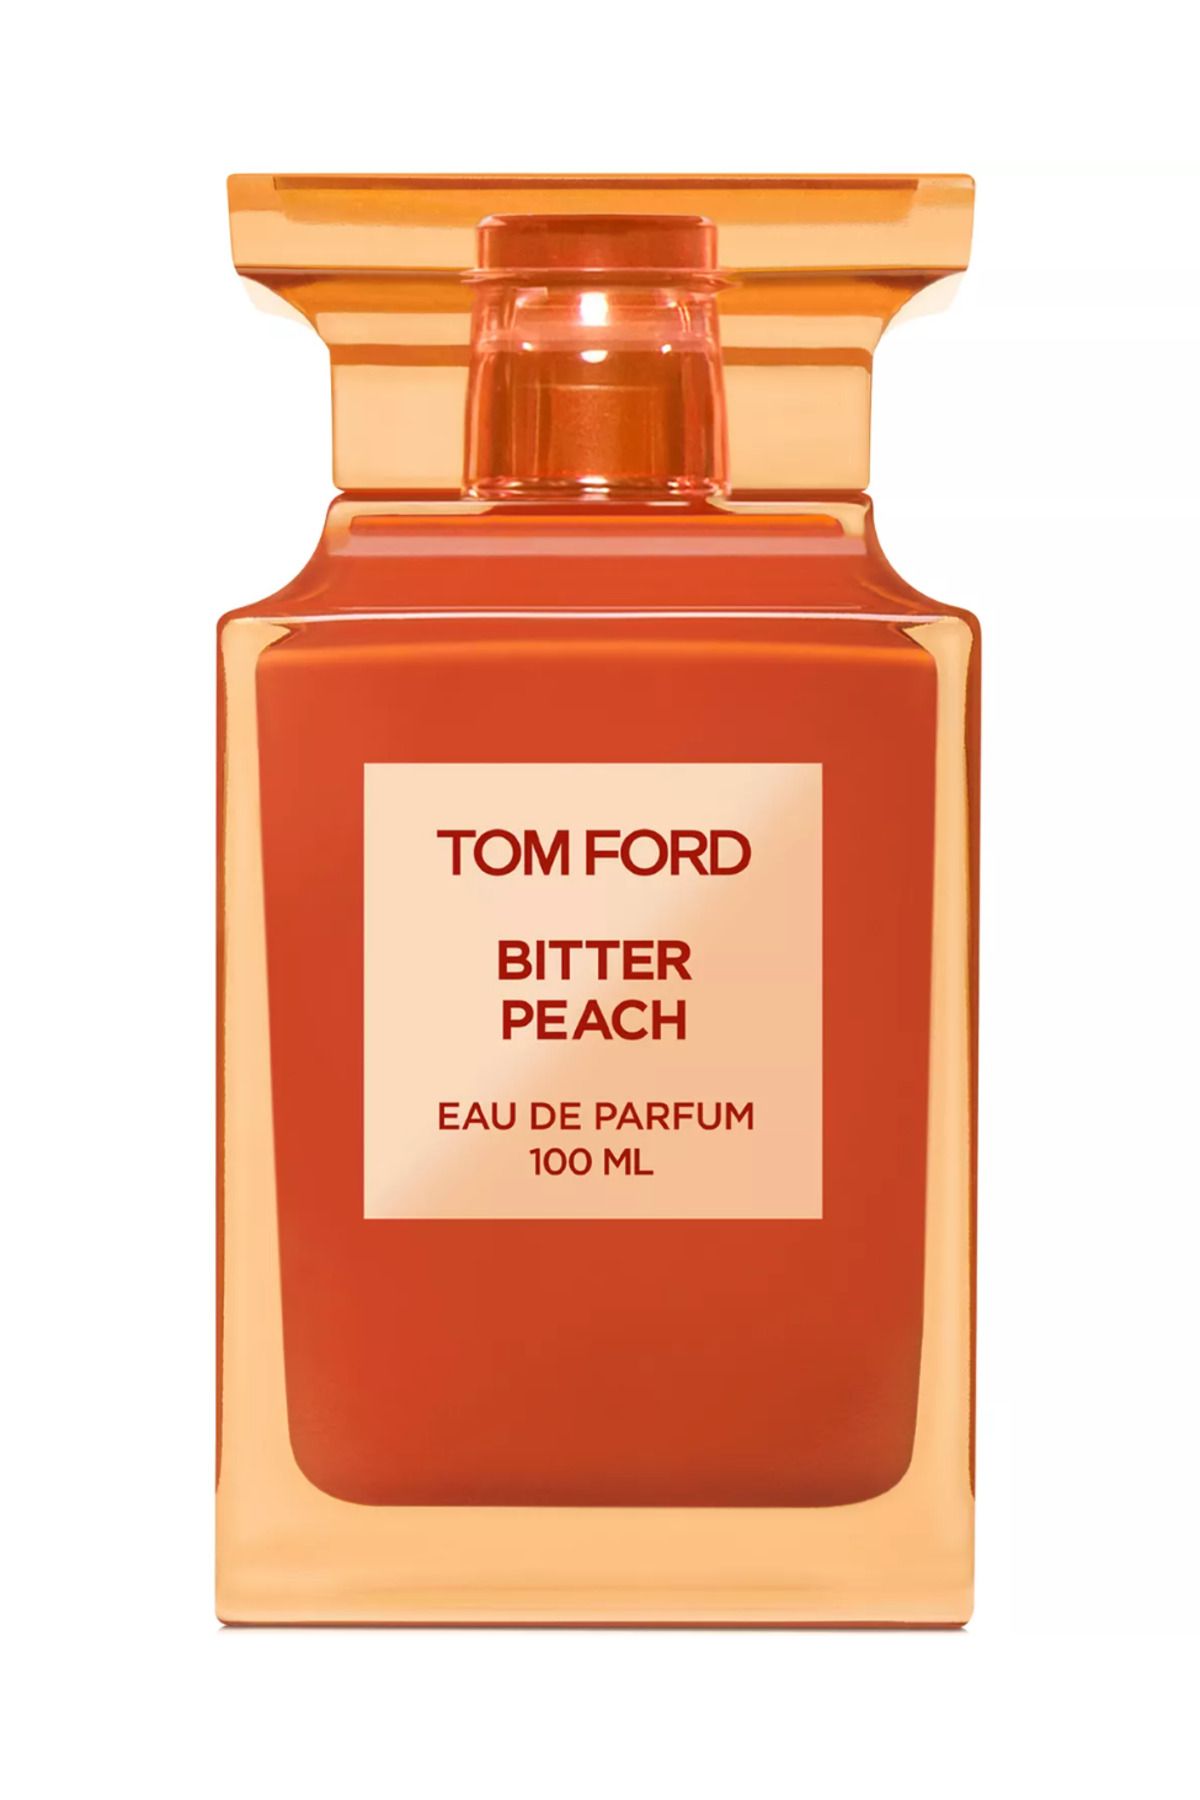 Tom Ford Bitter Peach Eau de Parfum 100 Ml